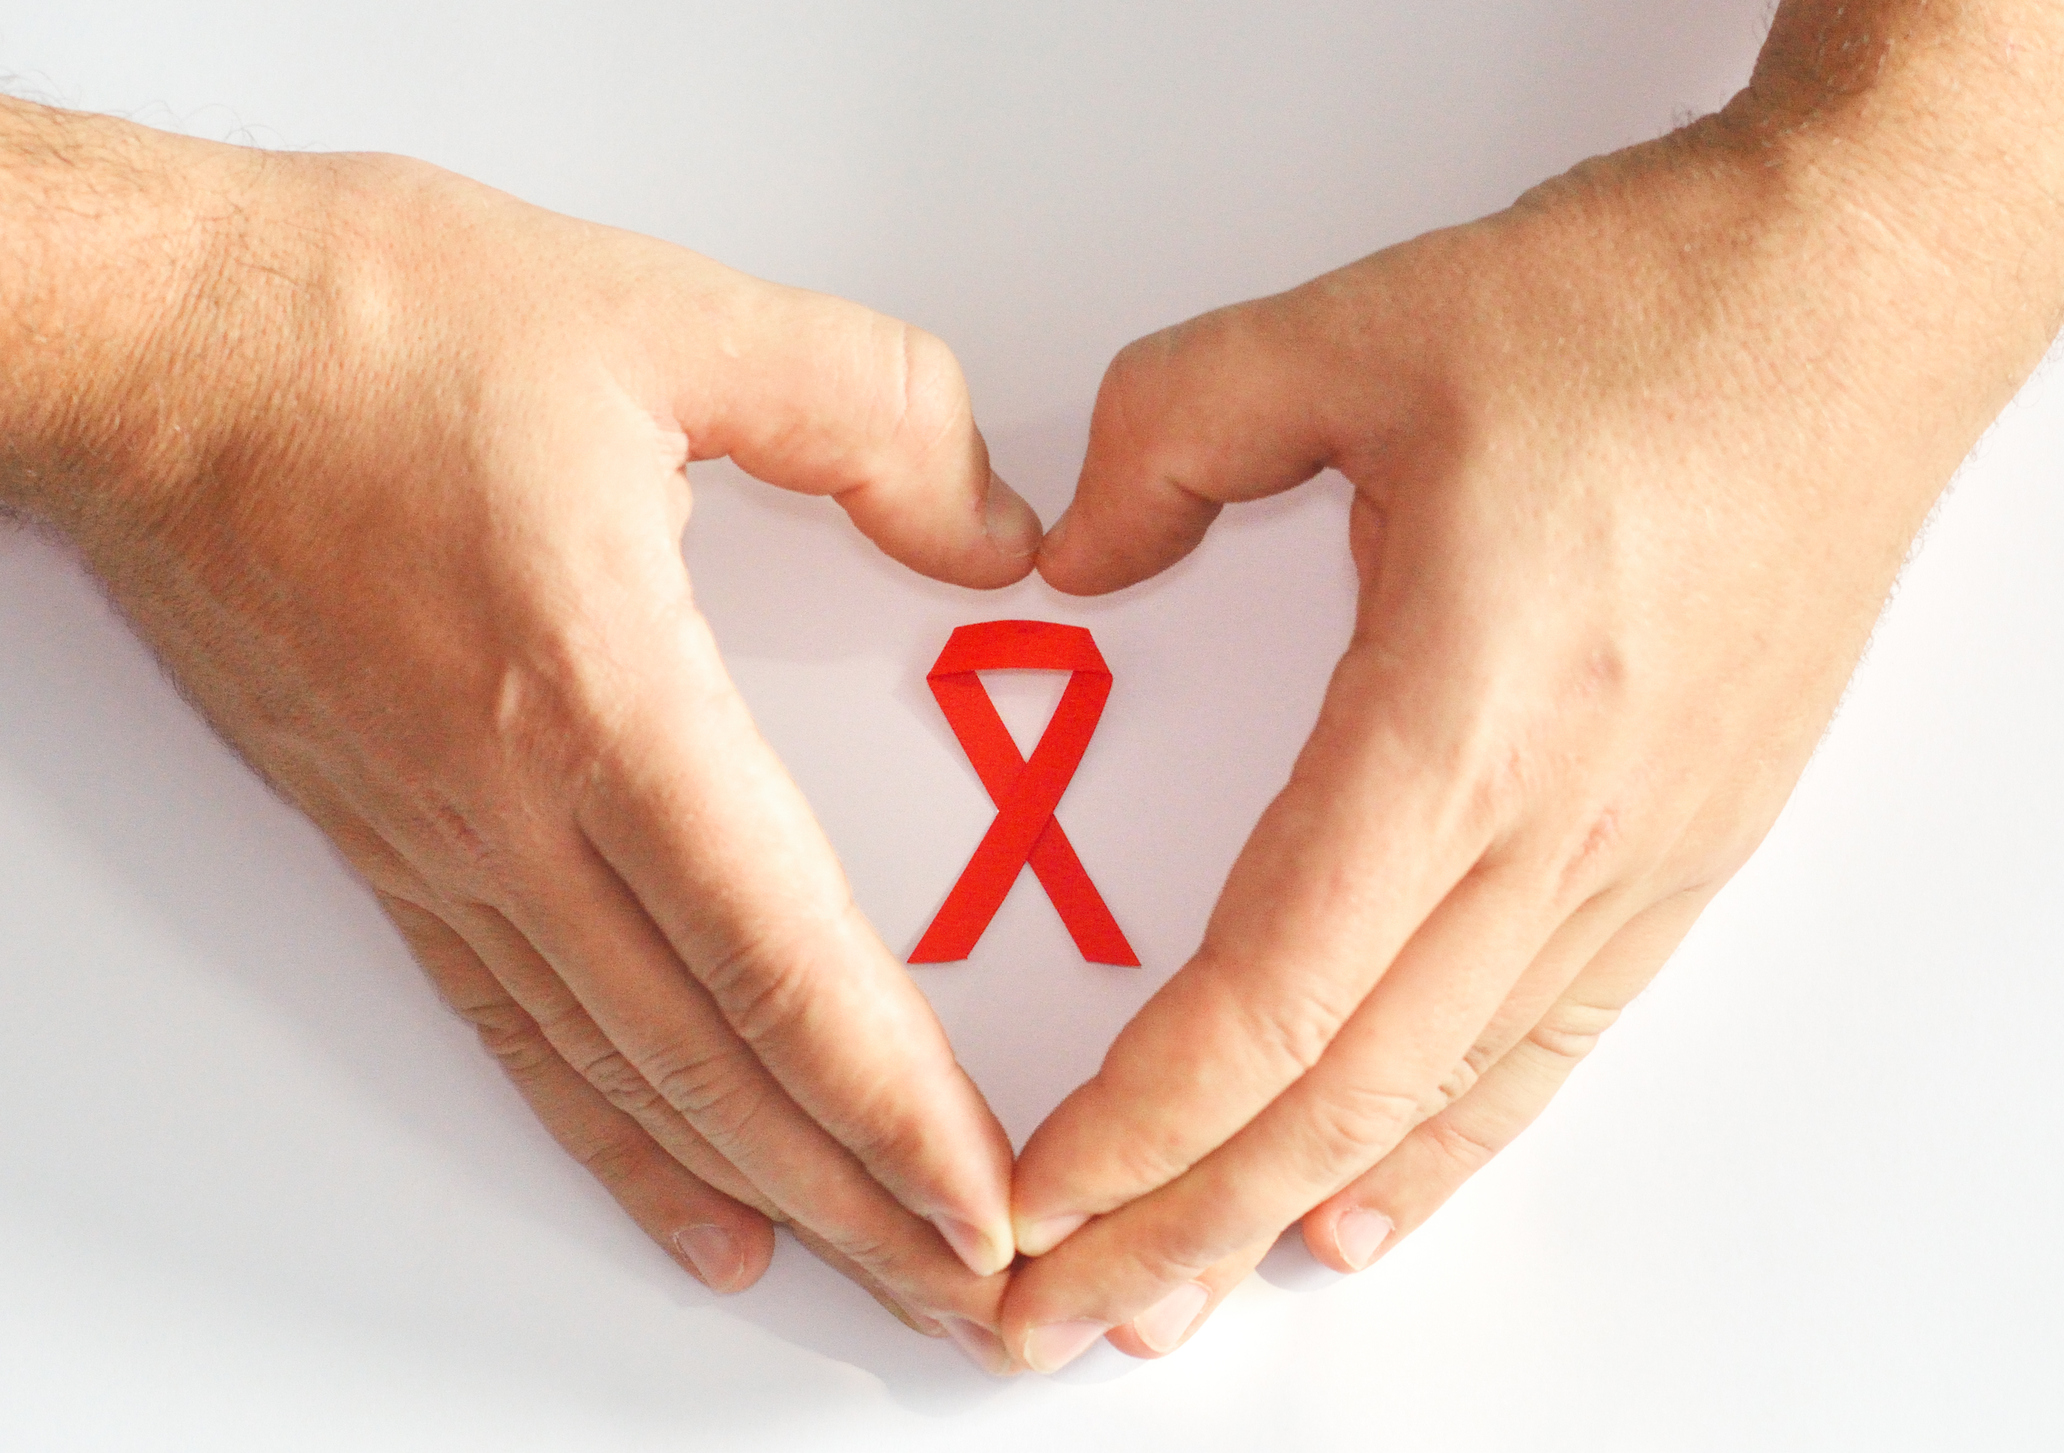 Pengetahuan dan psikososial perawat dalam melakukan perawatan pada orang dengan HIV / AIDS (ODHA)